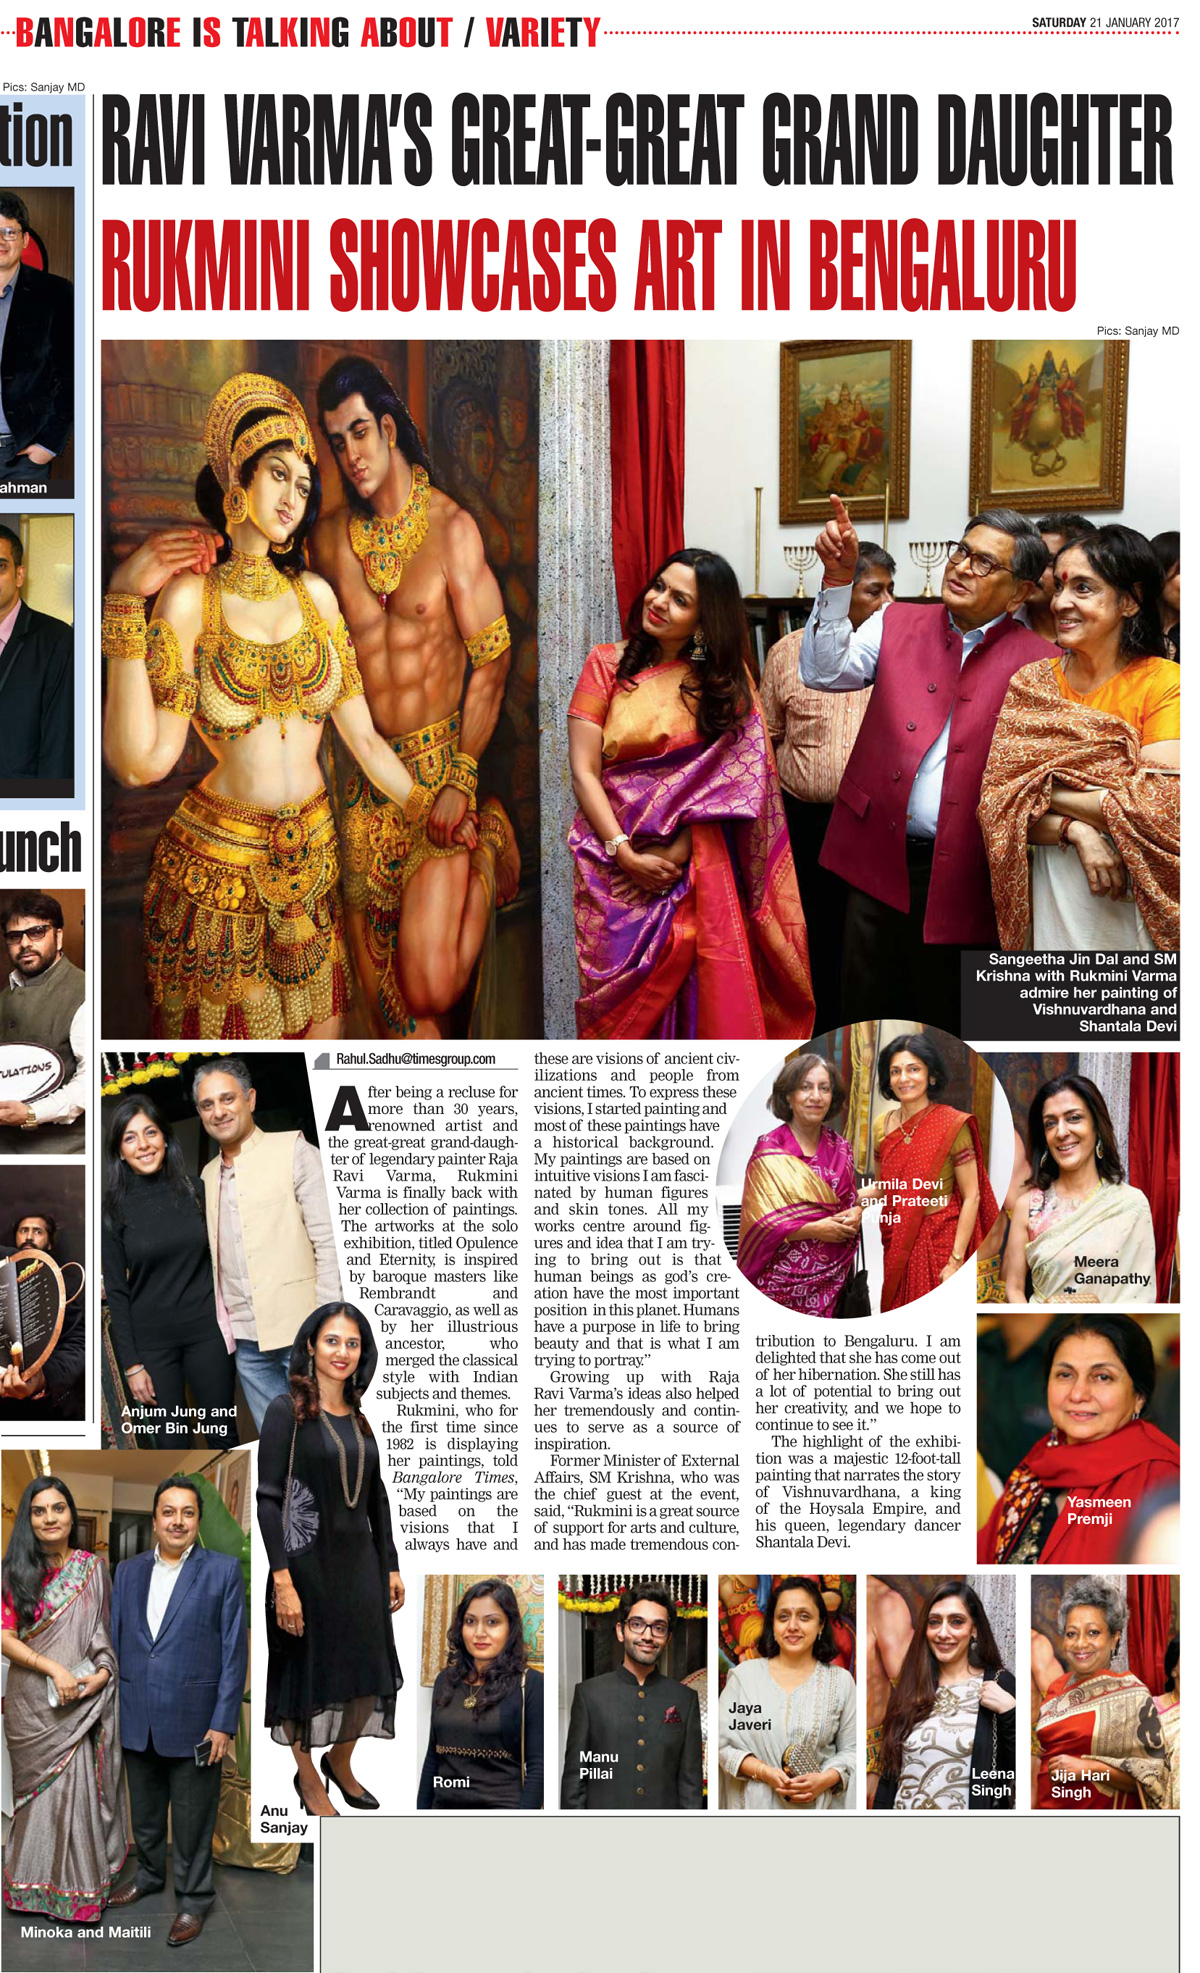 Ravi Varmas great-great granddaughter showcases art in Bengaluru